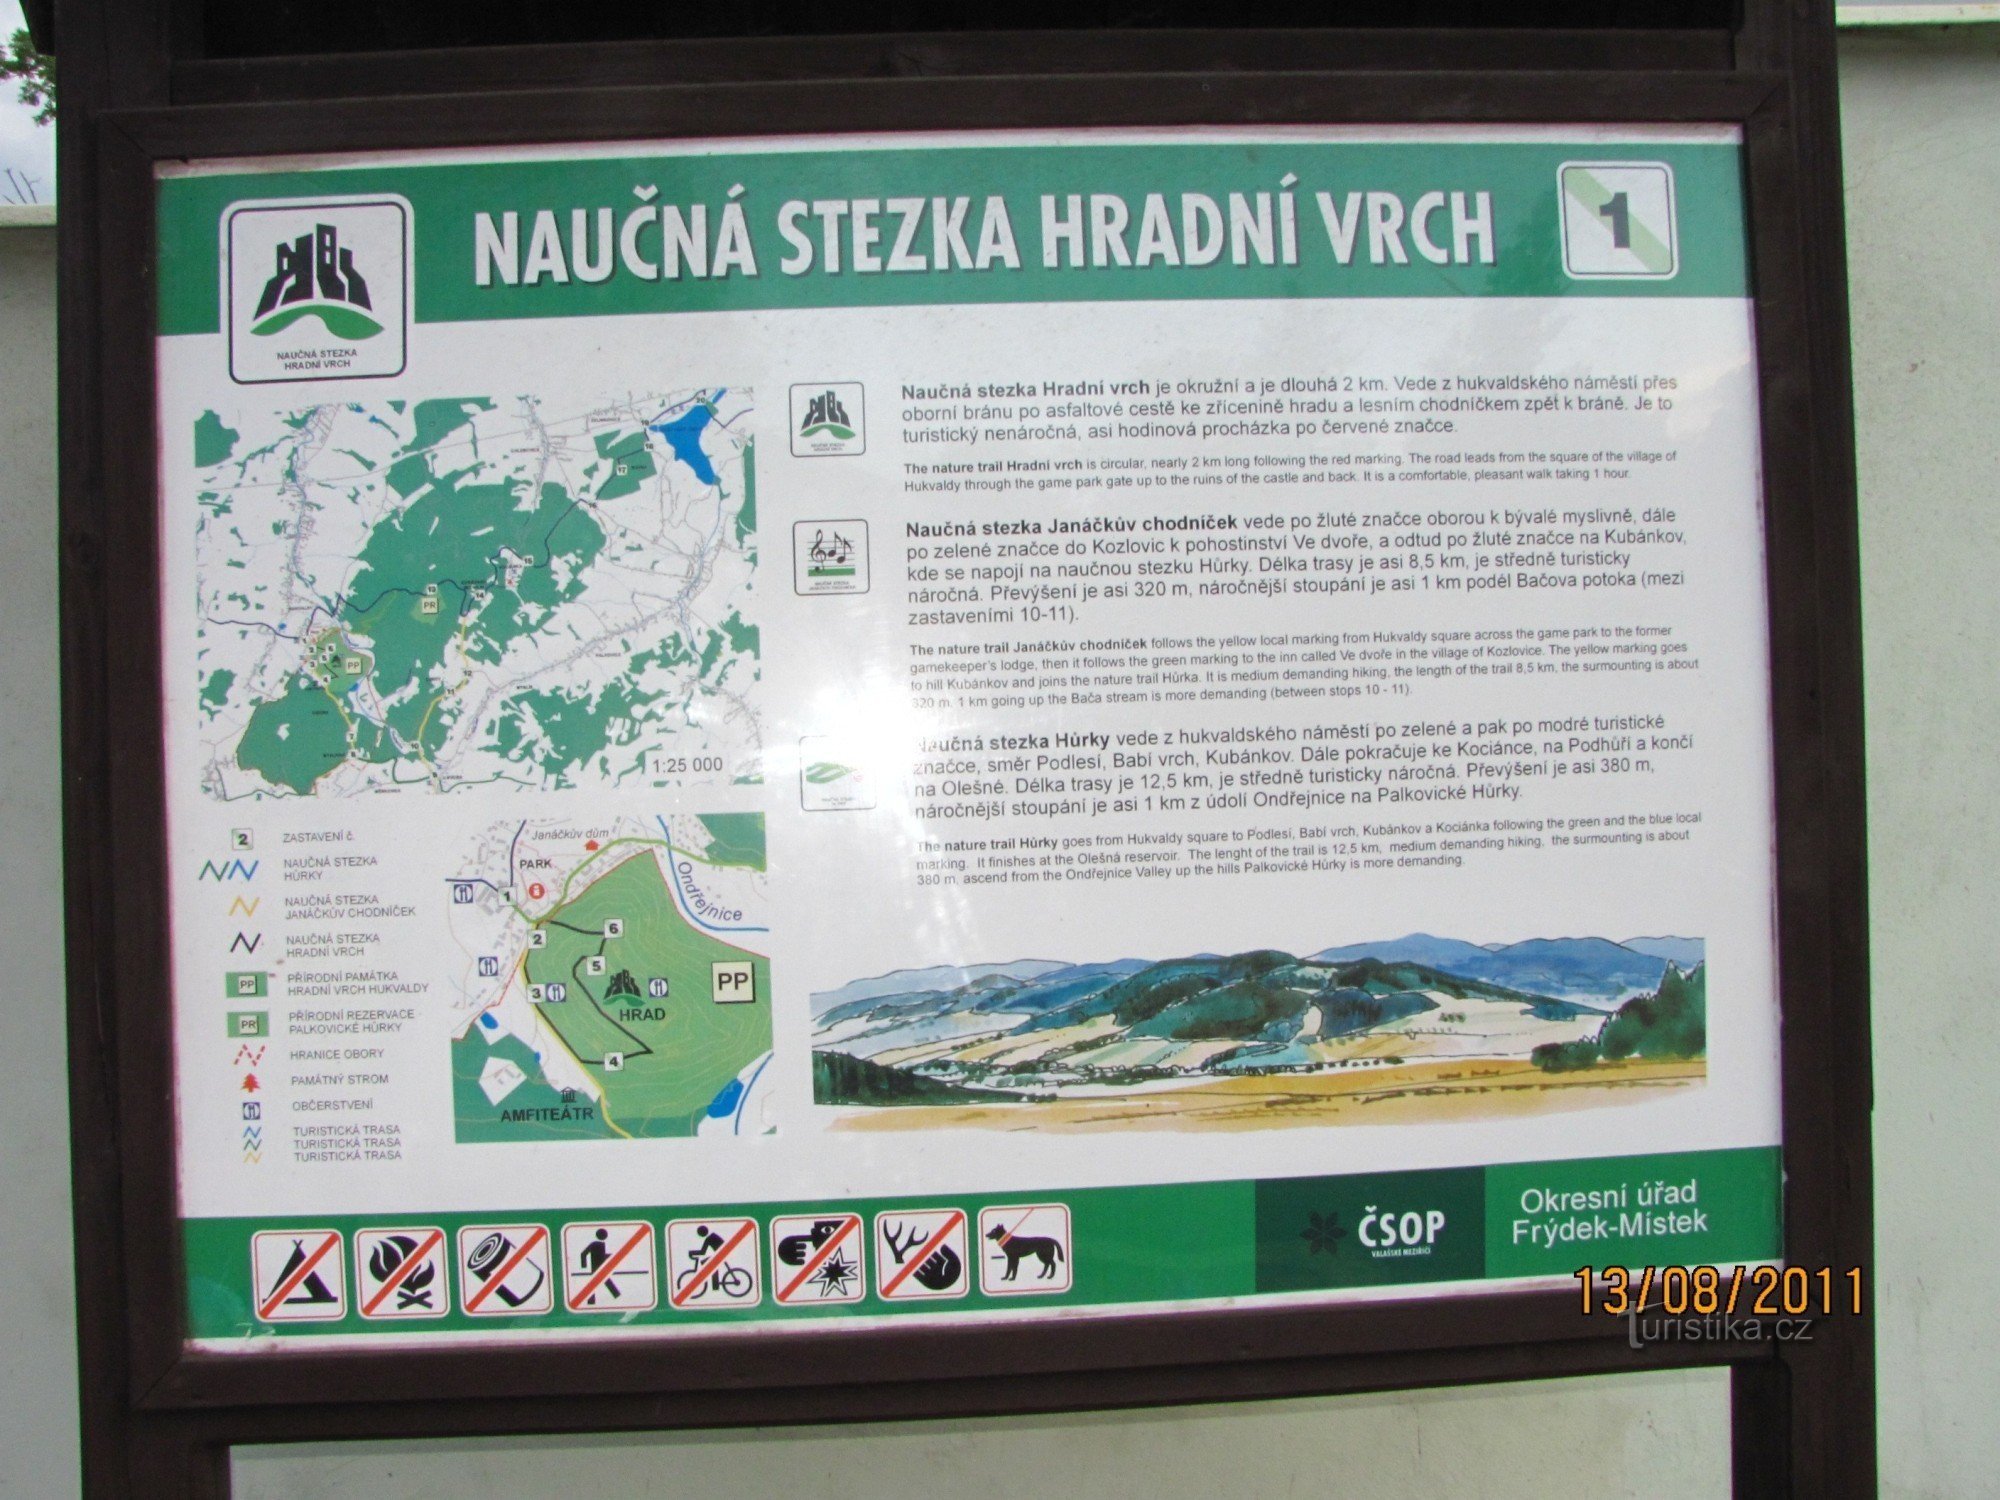 Educational trail Hradní vrch to Hukvaldy Castle